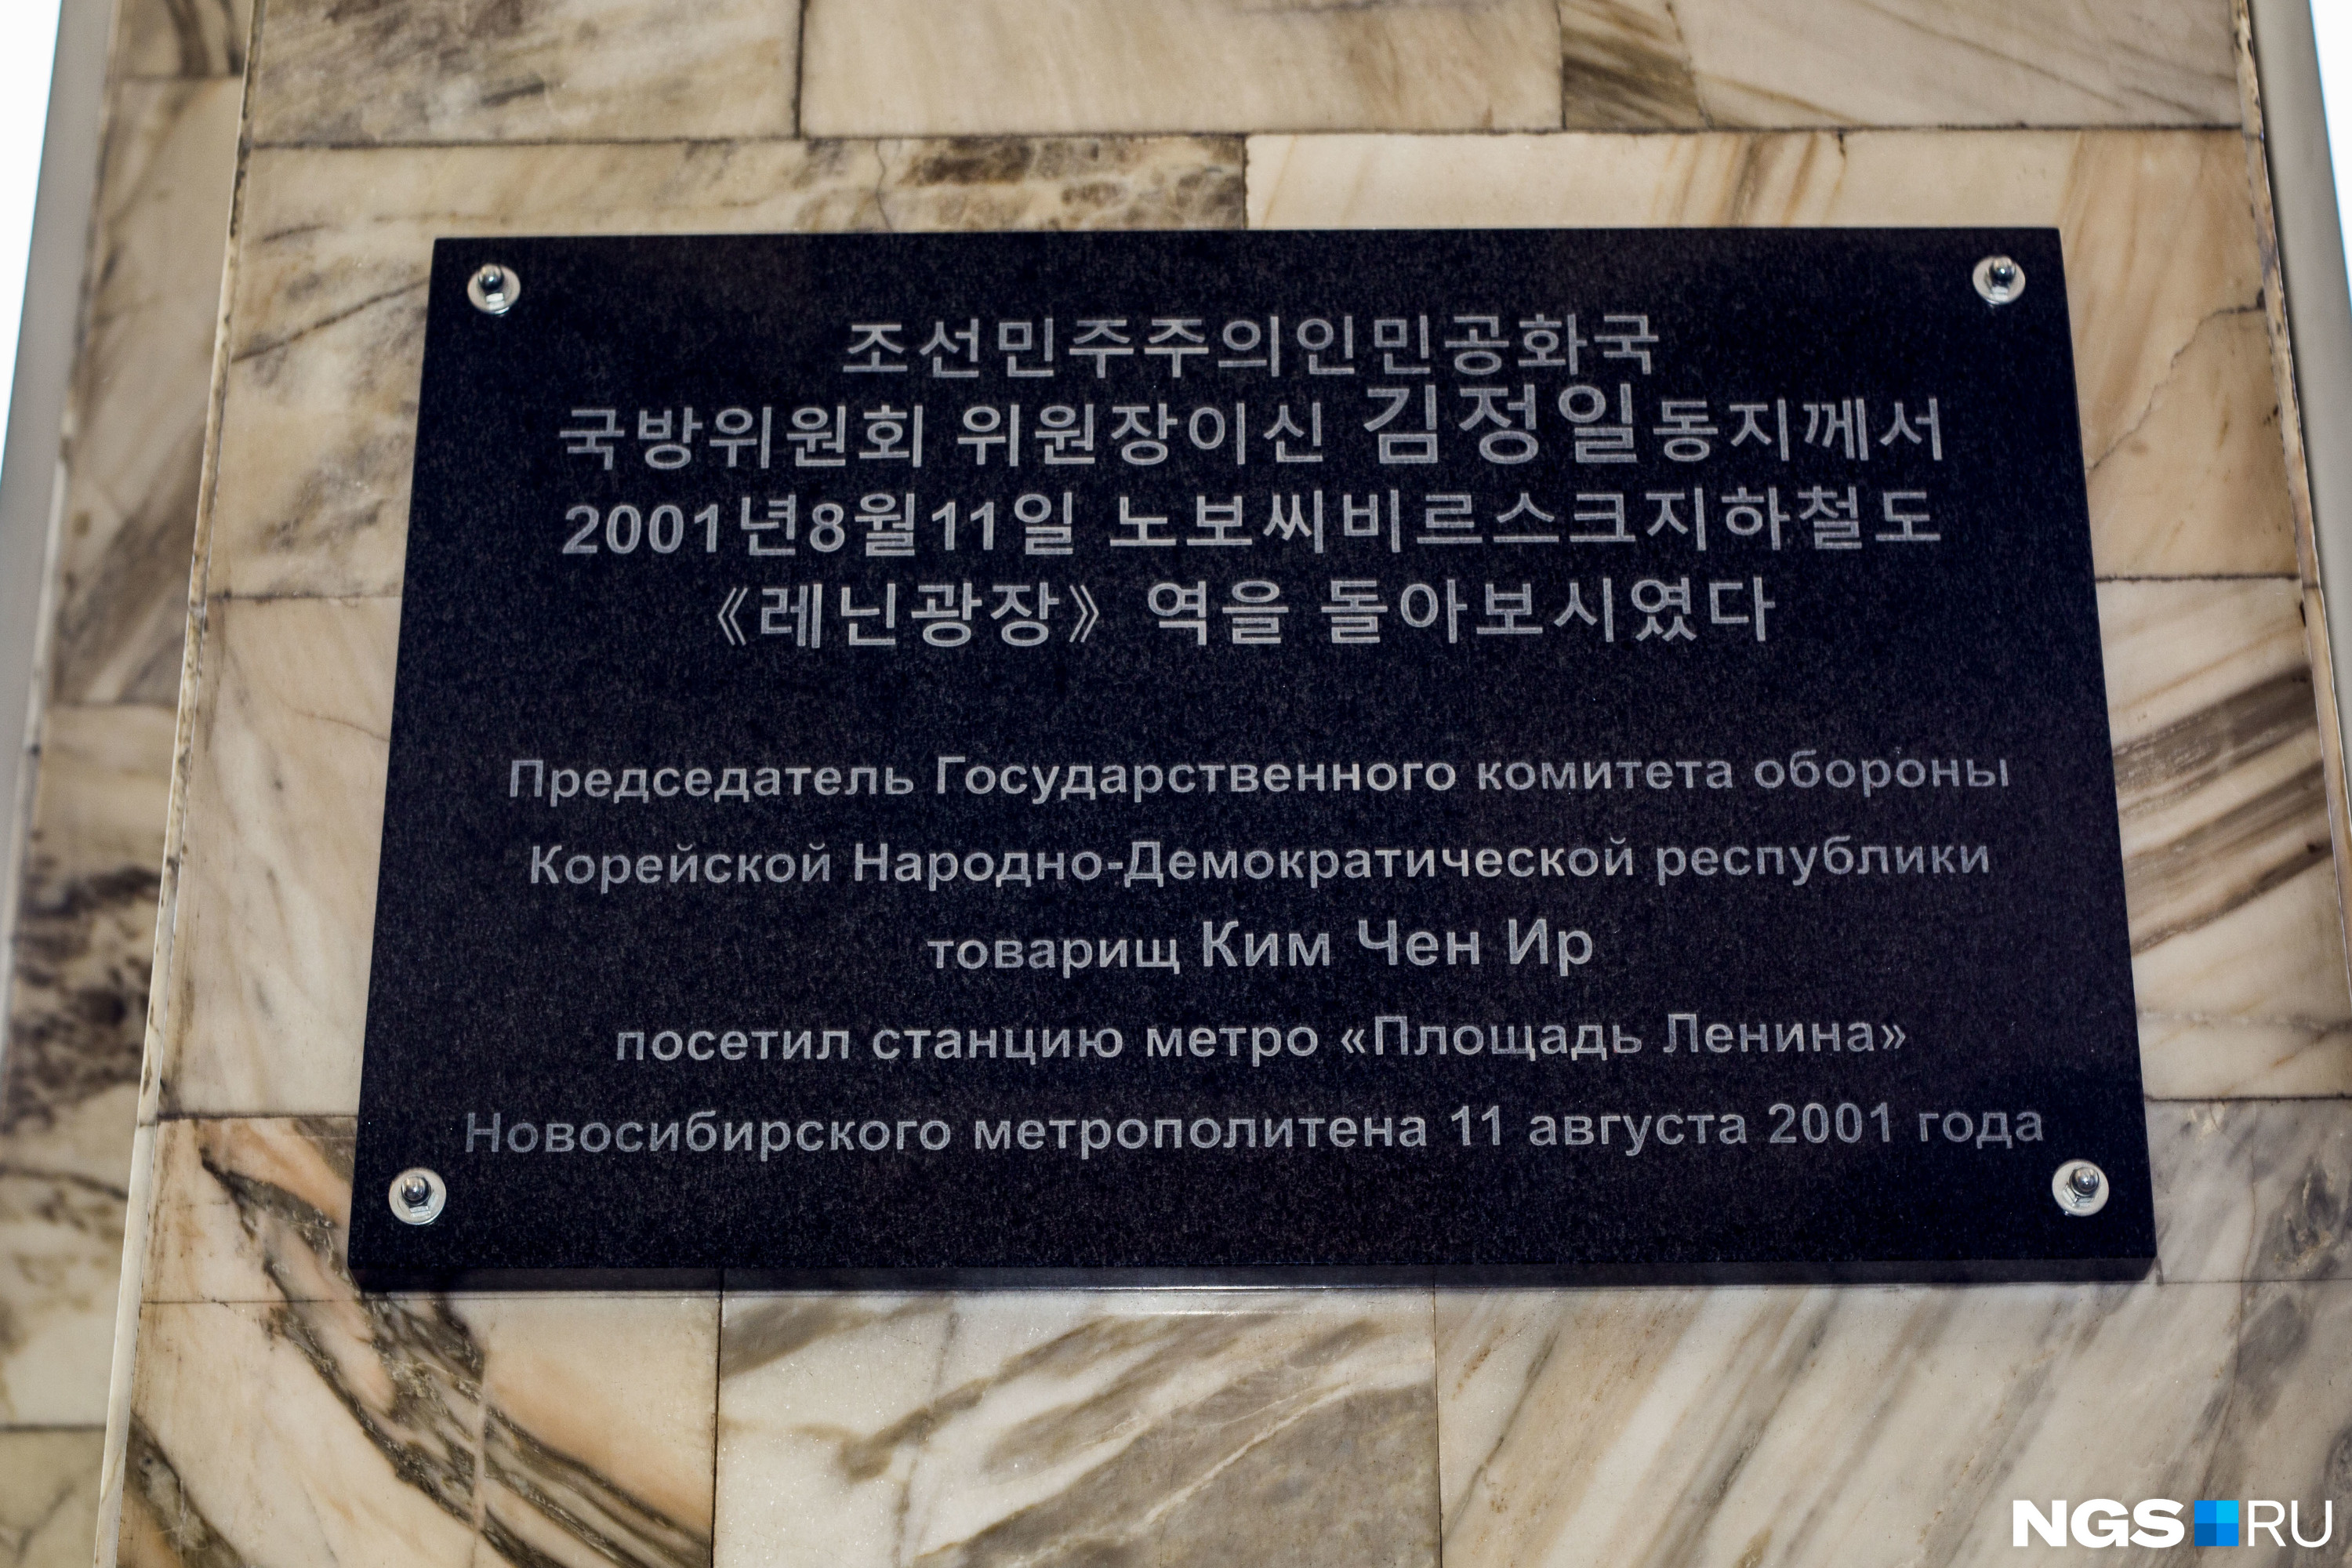 Двуязычная табличка появилась на входе на станцию «Площадь Ленина» со стороны краеведческого музея